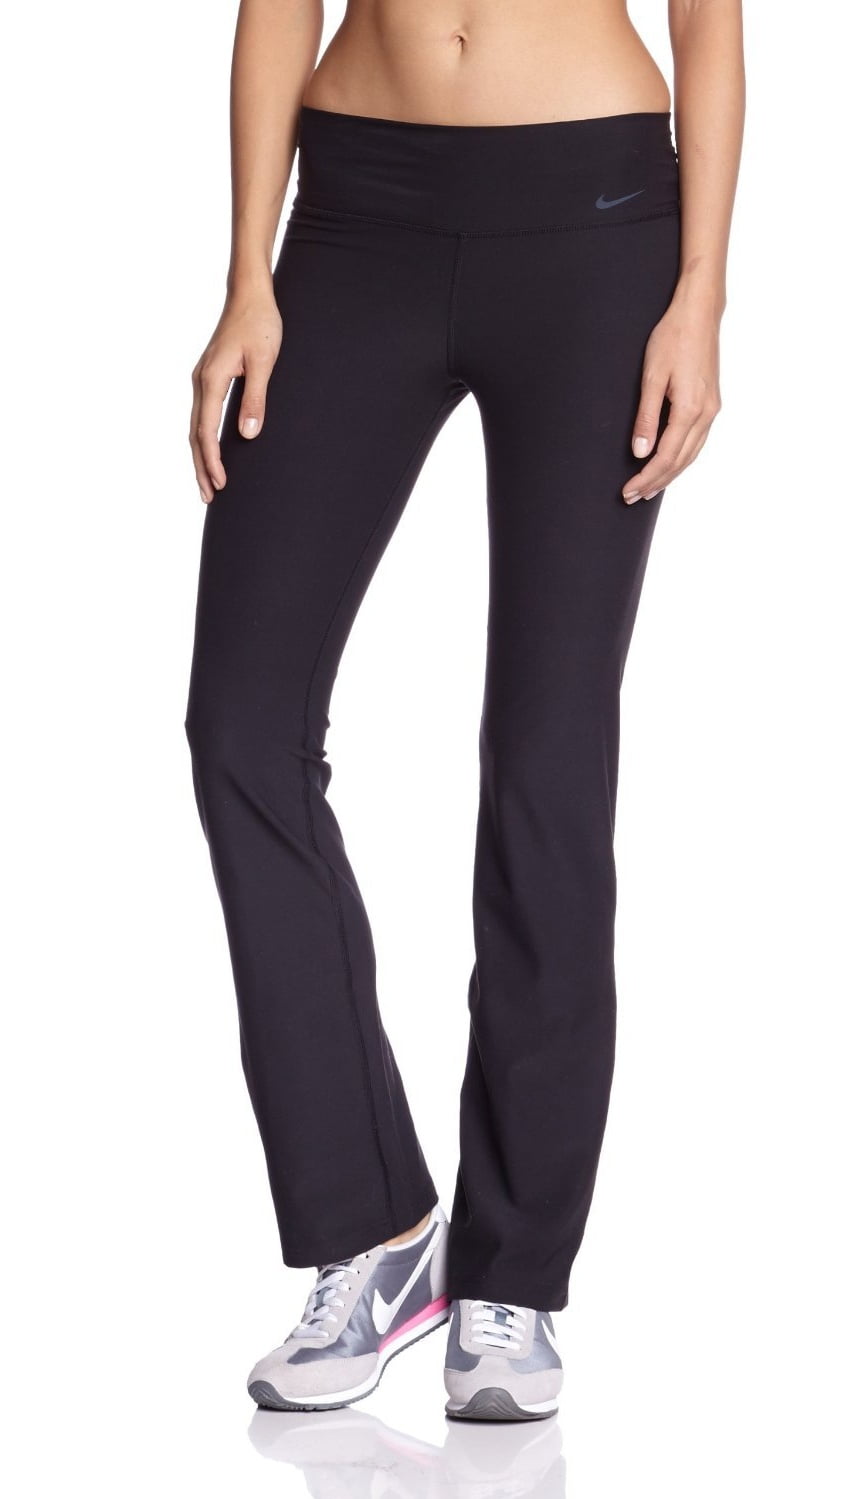 Estrella vestir ven Nike Legend Women's Dri-Fit Running Pants Black Slim Fit - Walmart.com